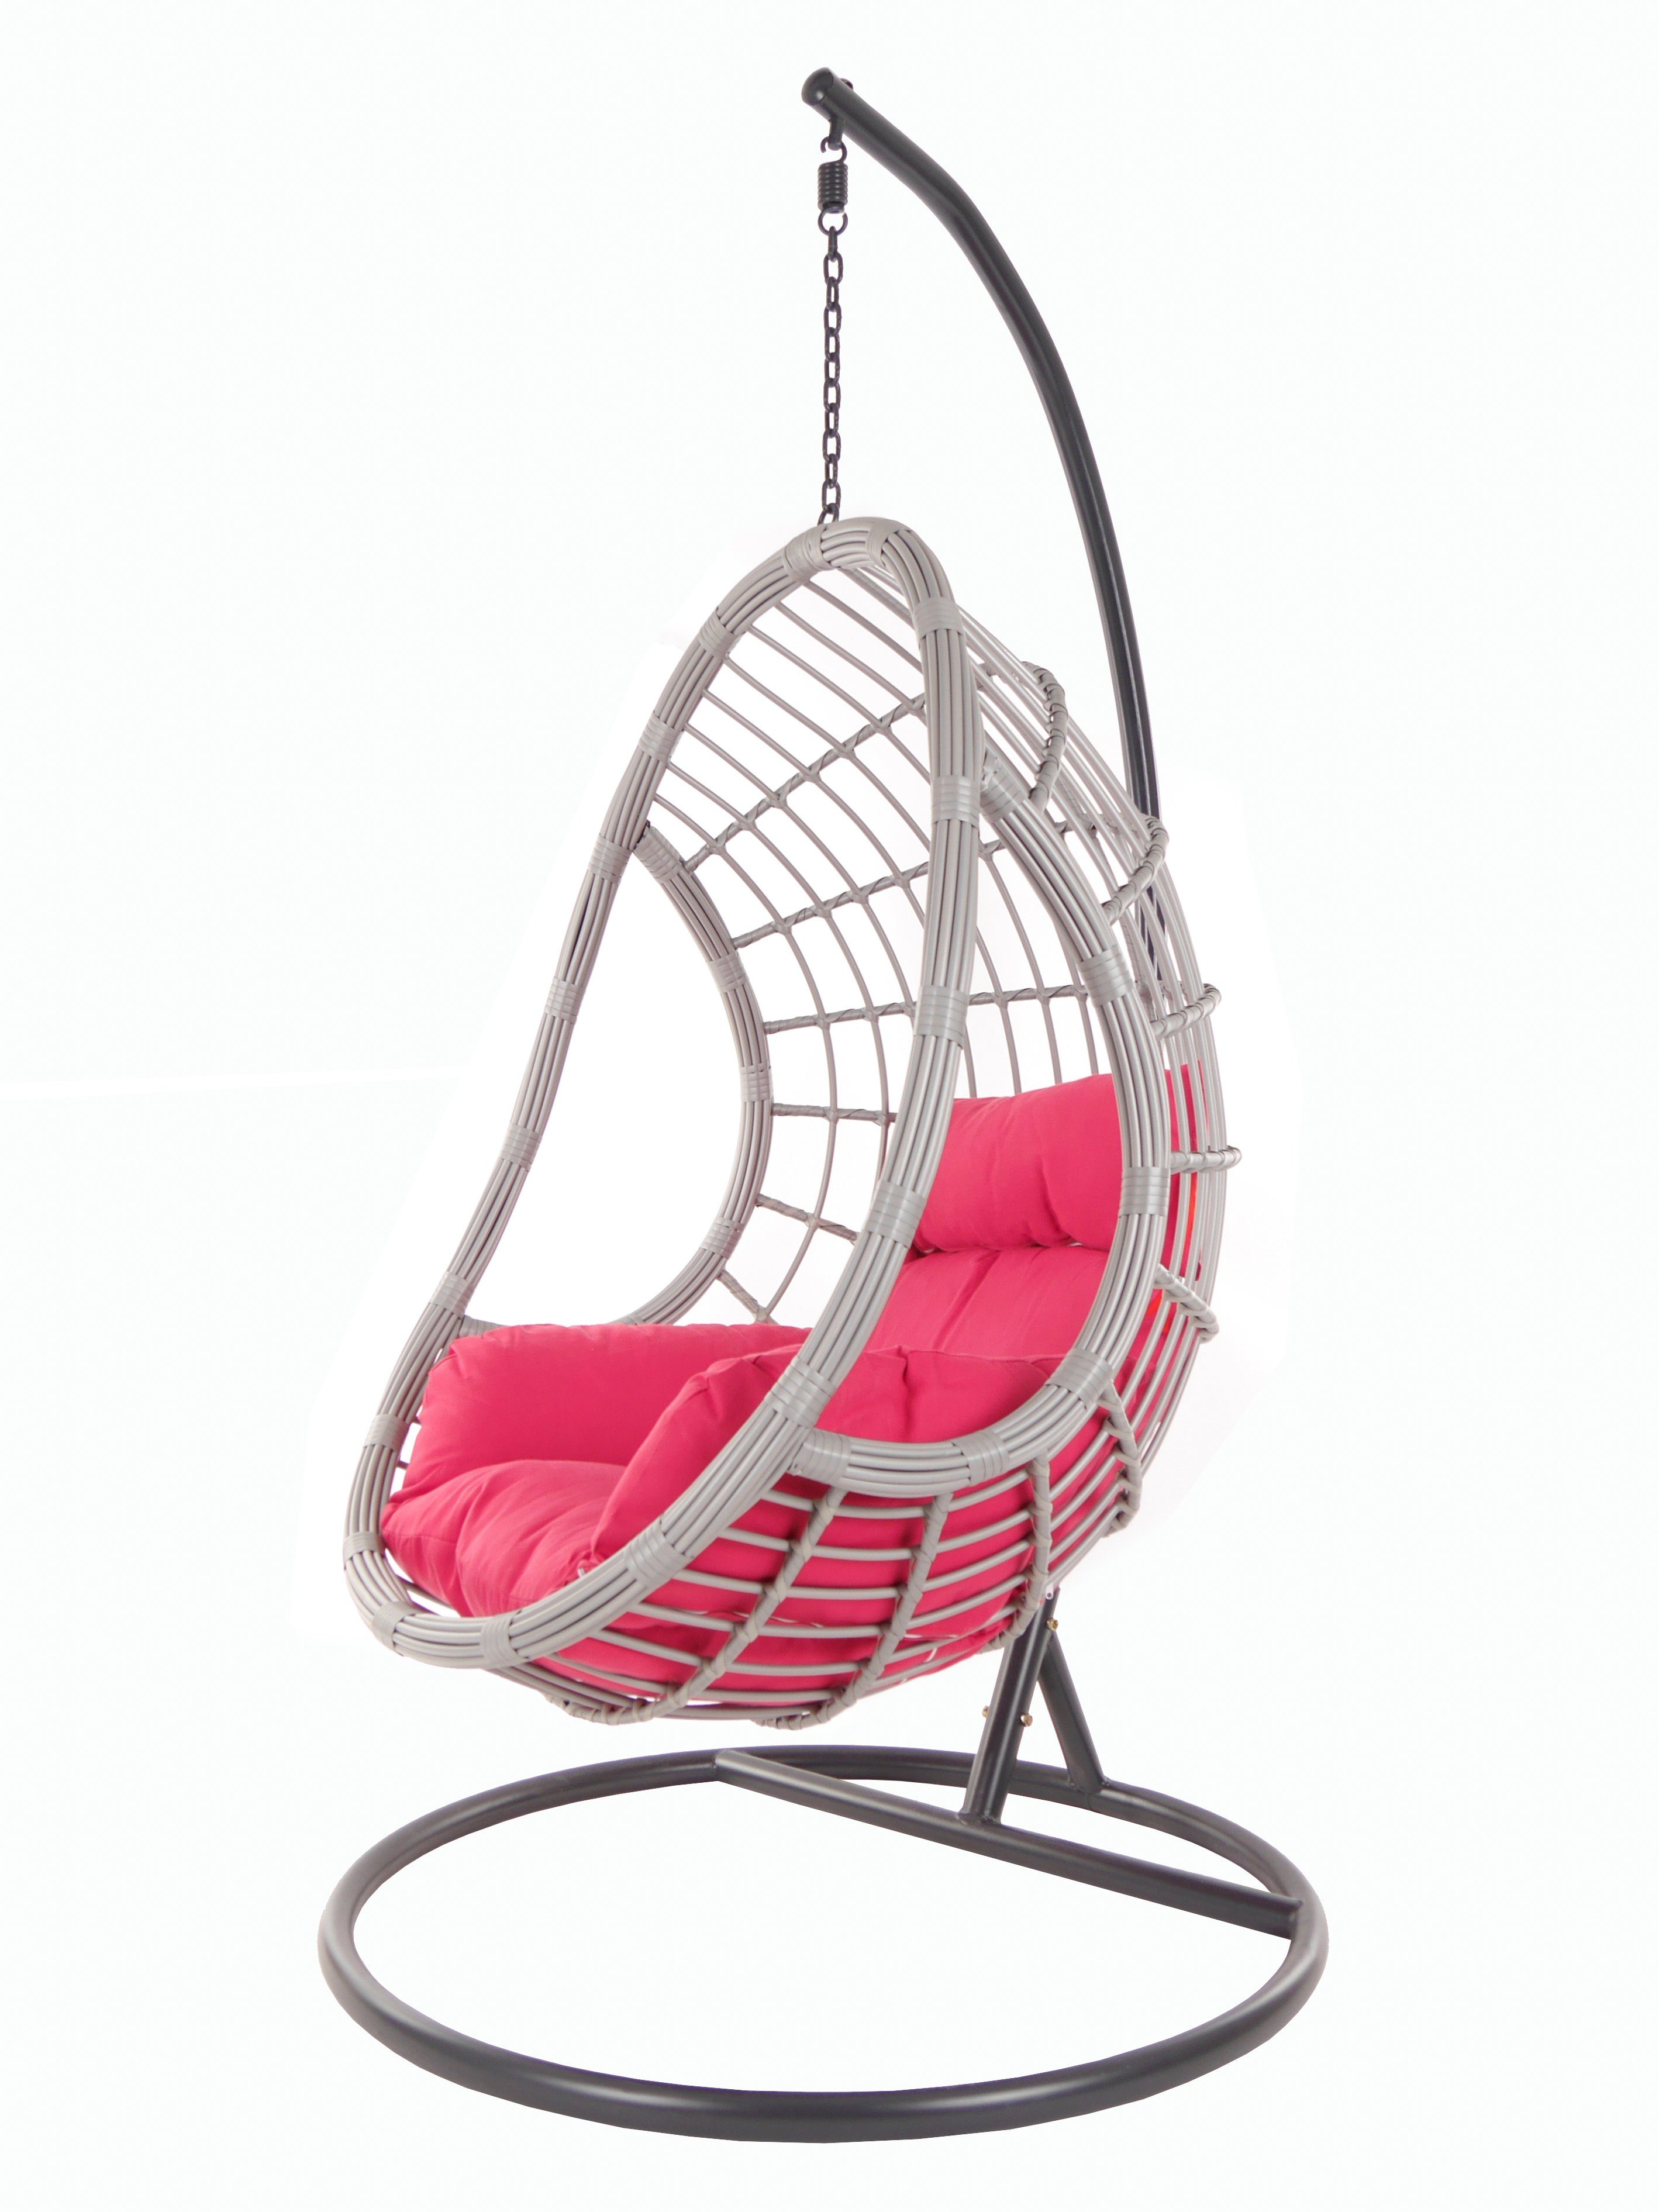 KIDEO Hängesessel PALMANOVA lightgrey, Schwebesessel mit Gestell und Kissen, Swing Chair, Loungemöbel pink (3333 hot pink)